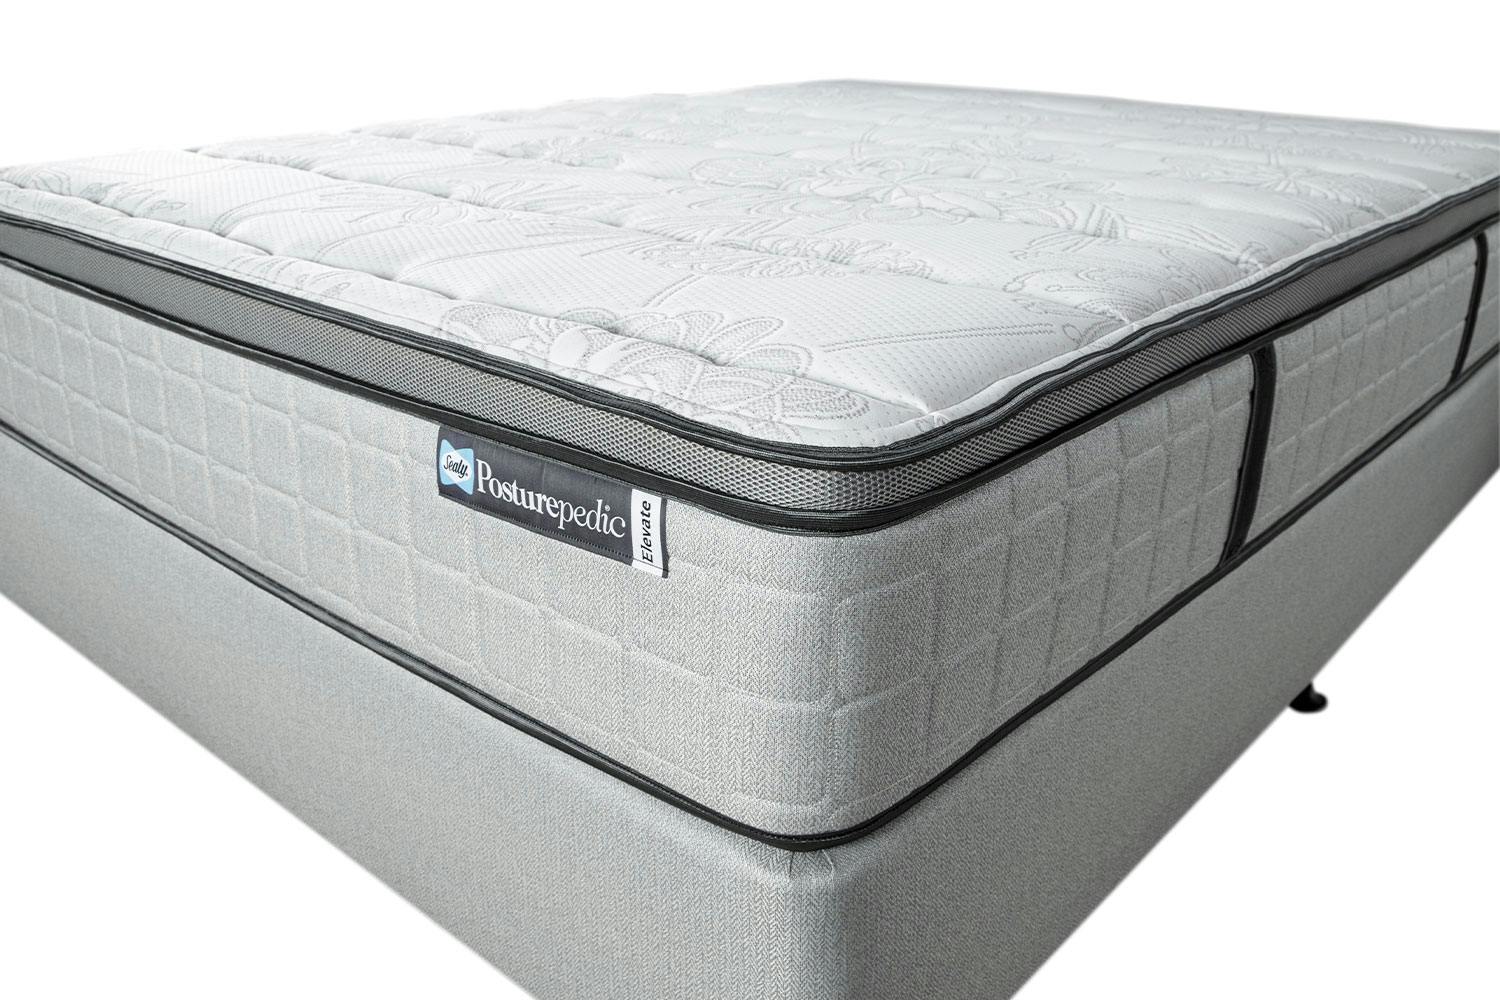 highgrove raffles 1000 mattress review